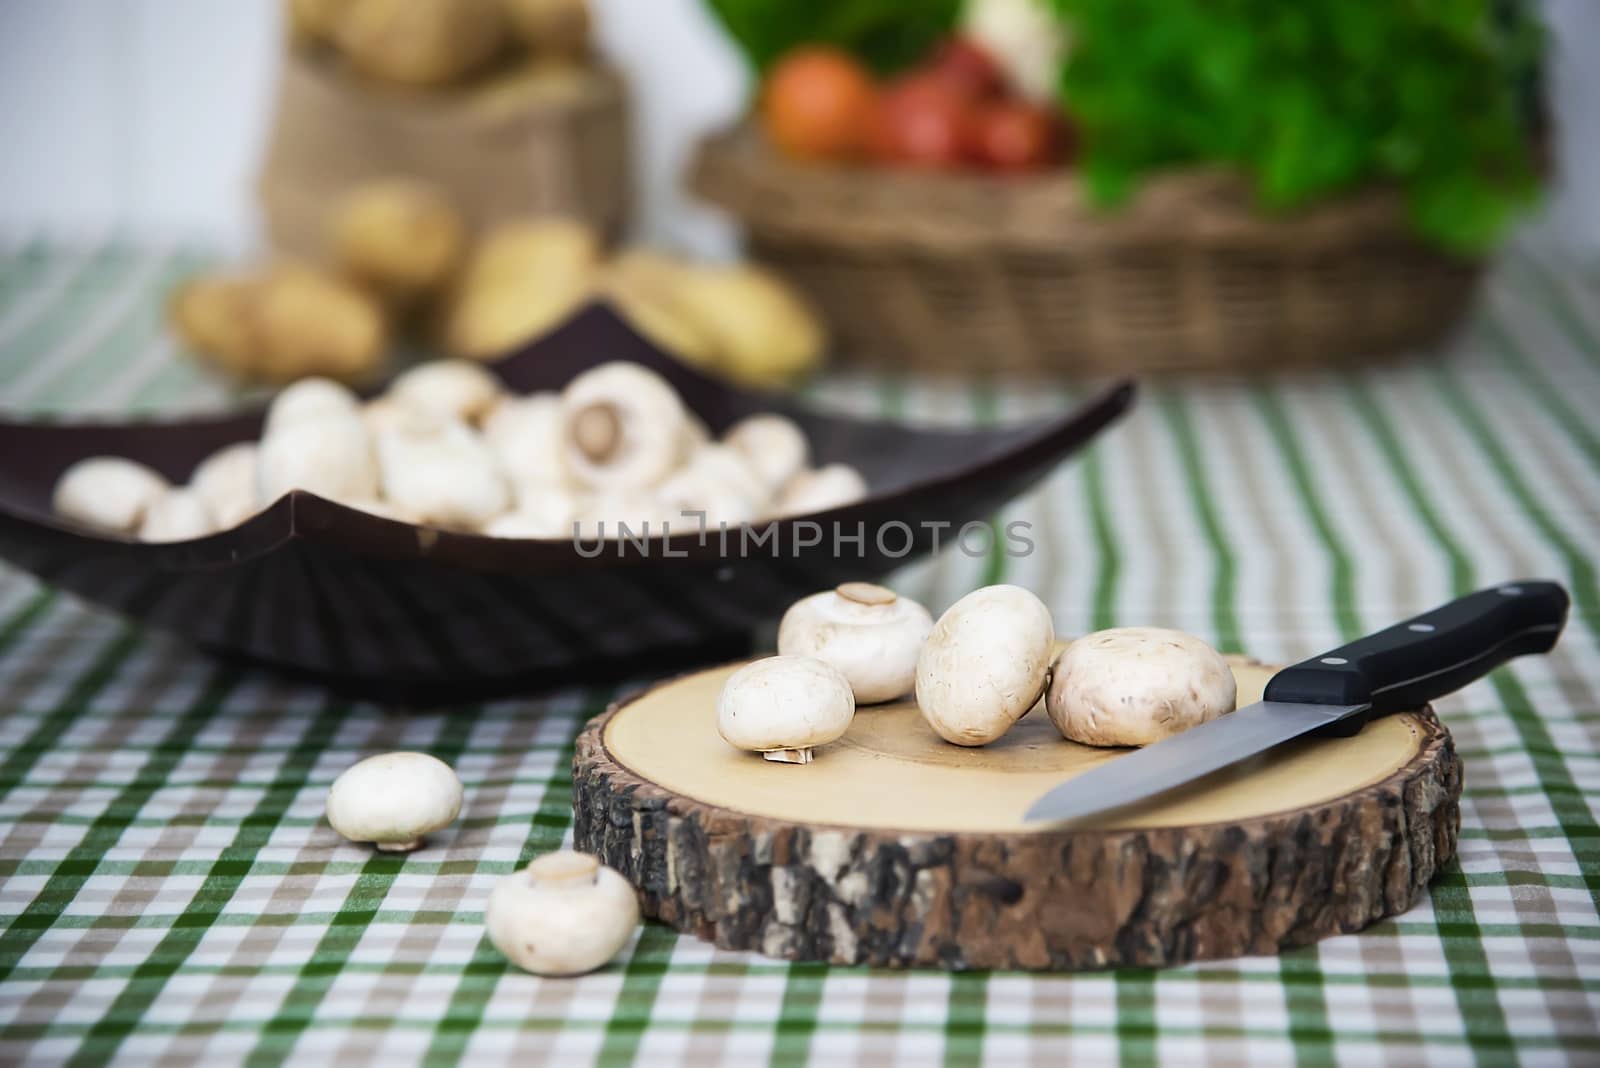 Fresh champignon mushroom vegetable in the kitchen - fresh mushroom vegetable cooking concept